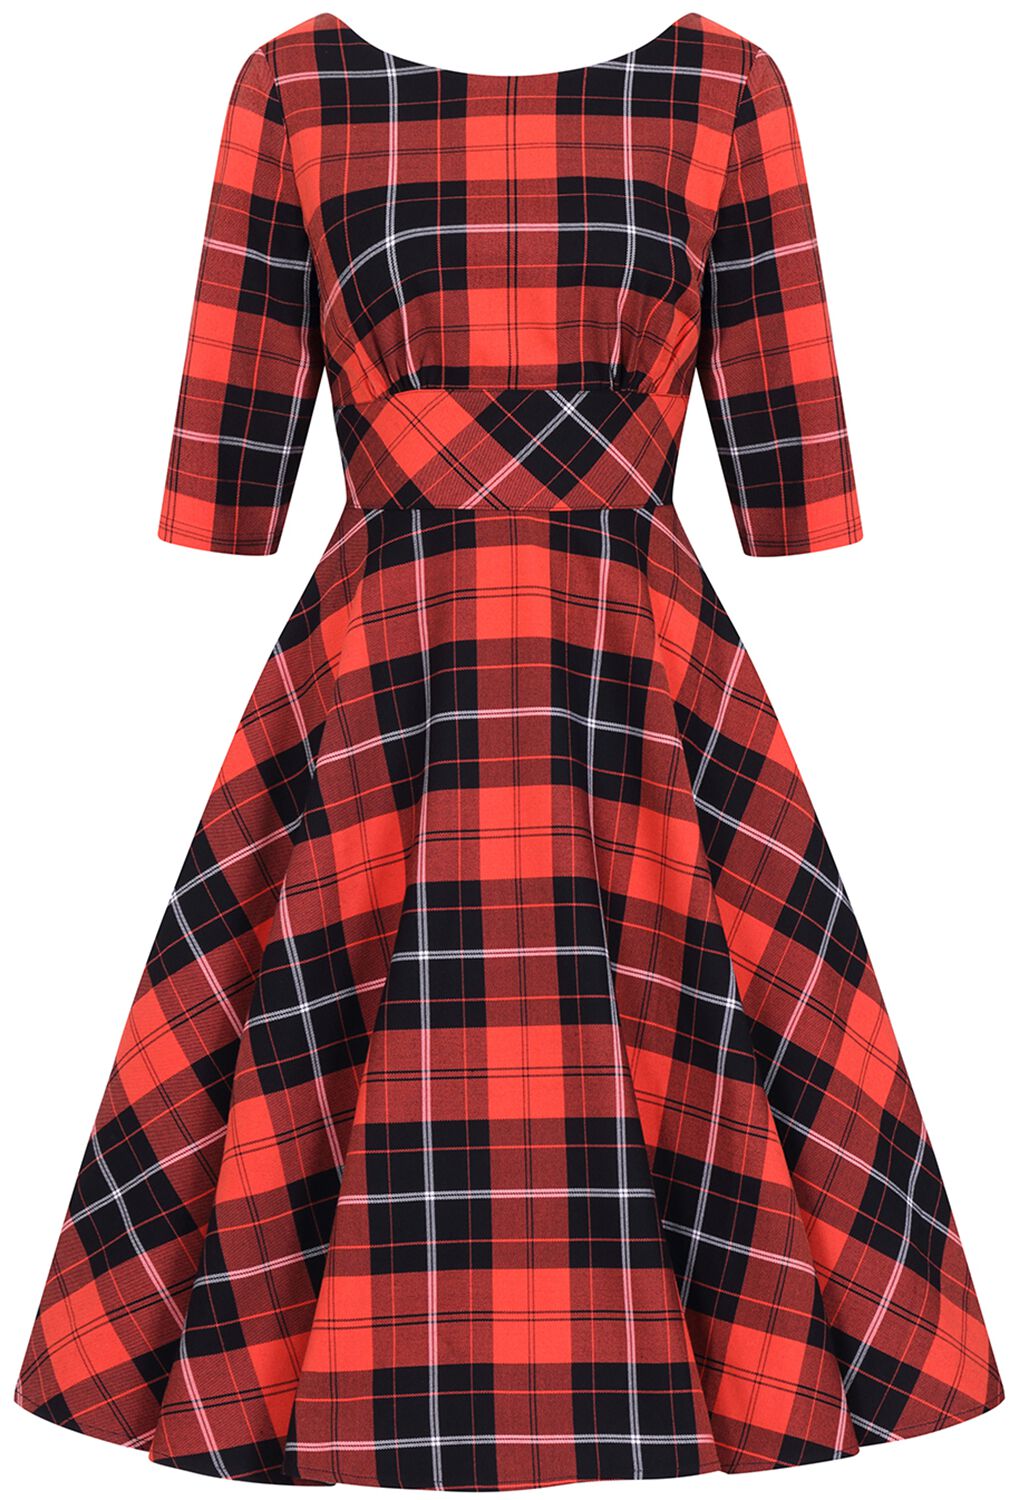 hebben zich vergist chaos Seizoen Clementine jaren 50 jurk | Hell Bunny Medium-lengte jurk | Large